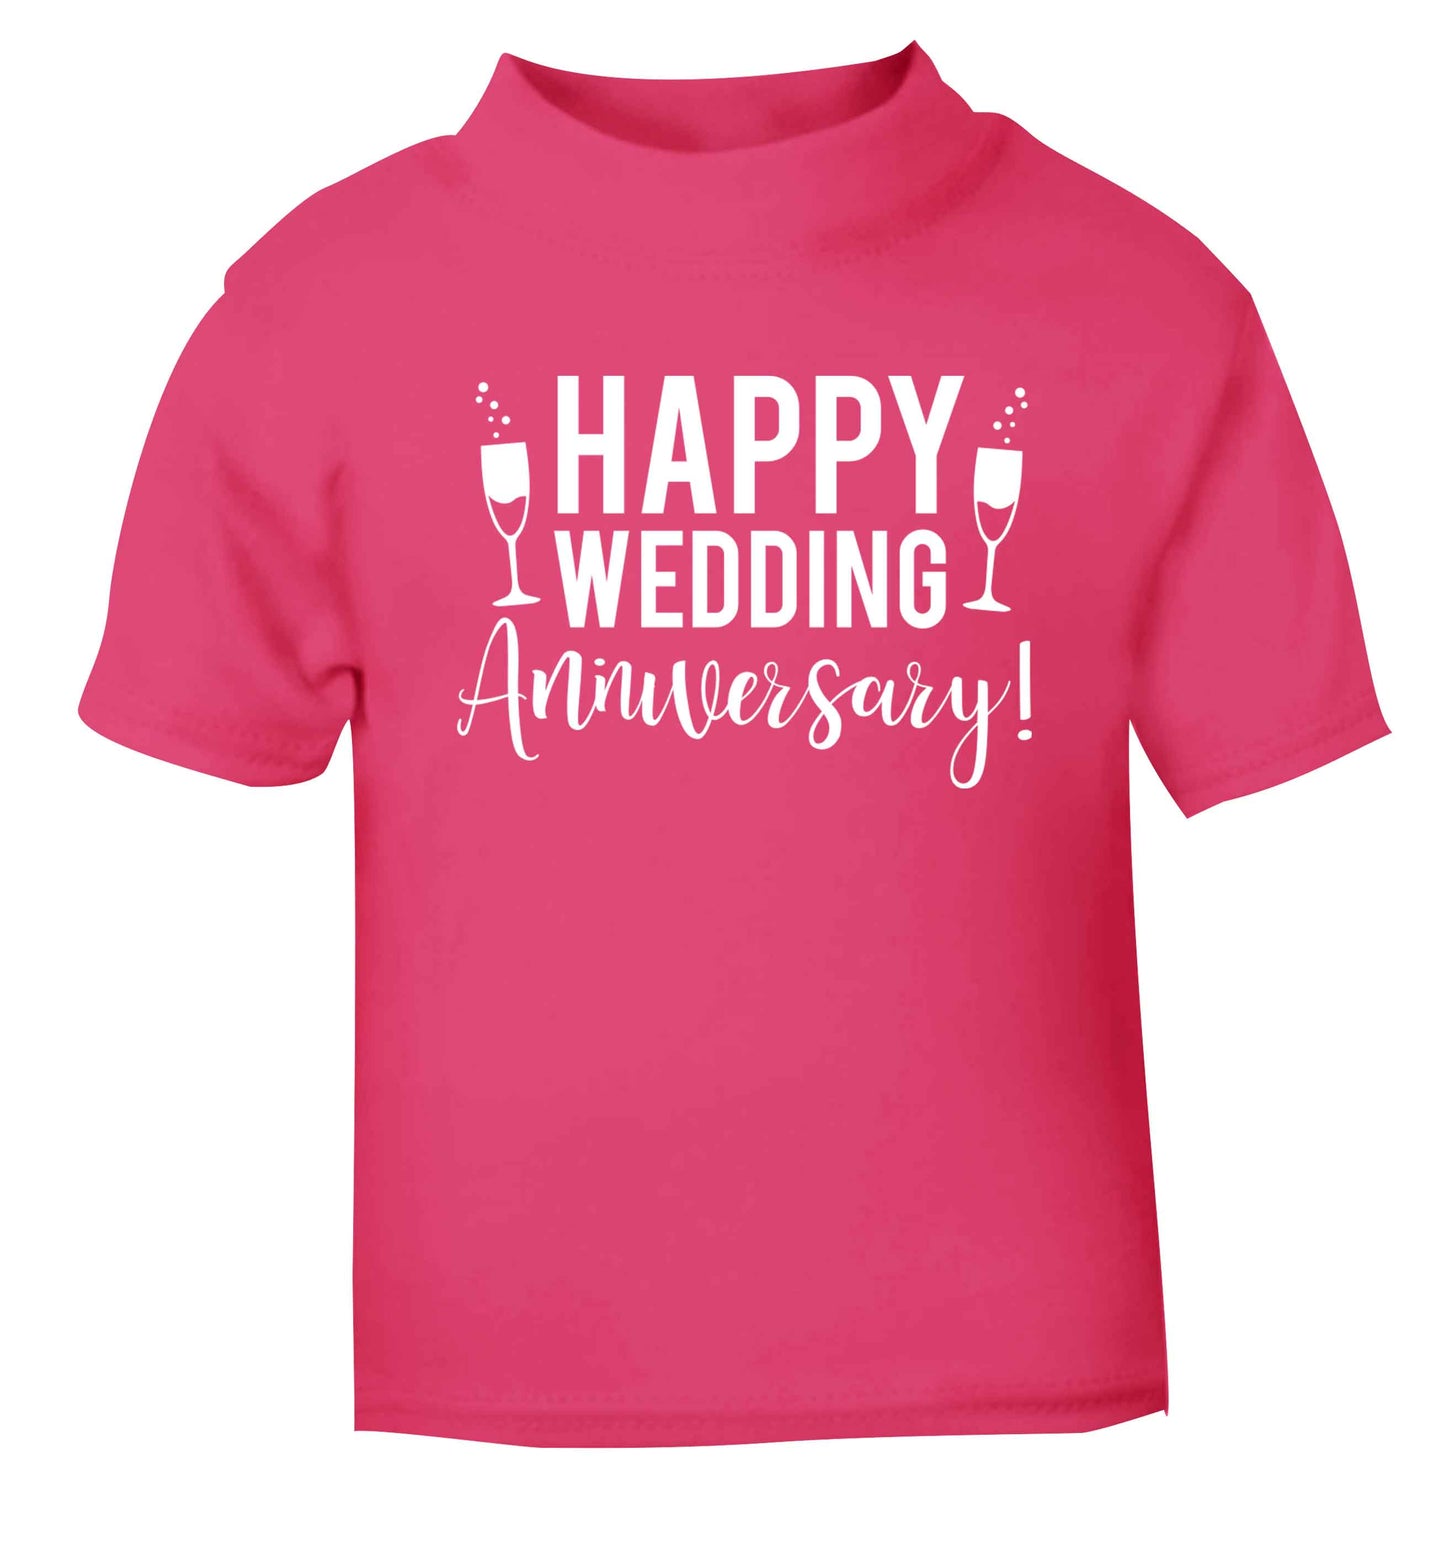 Happy wedding anniversary! pink baby toddler Tshirt 2 Years